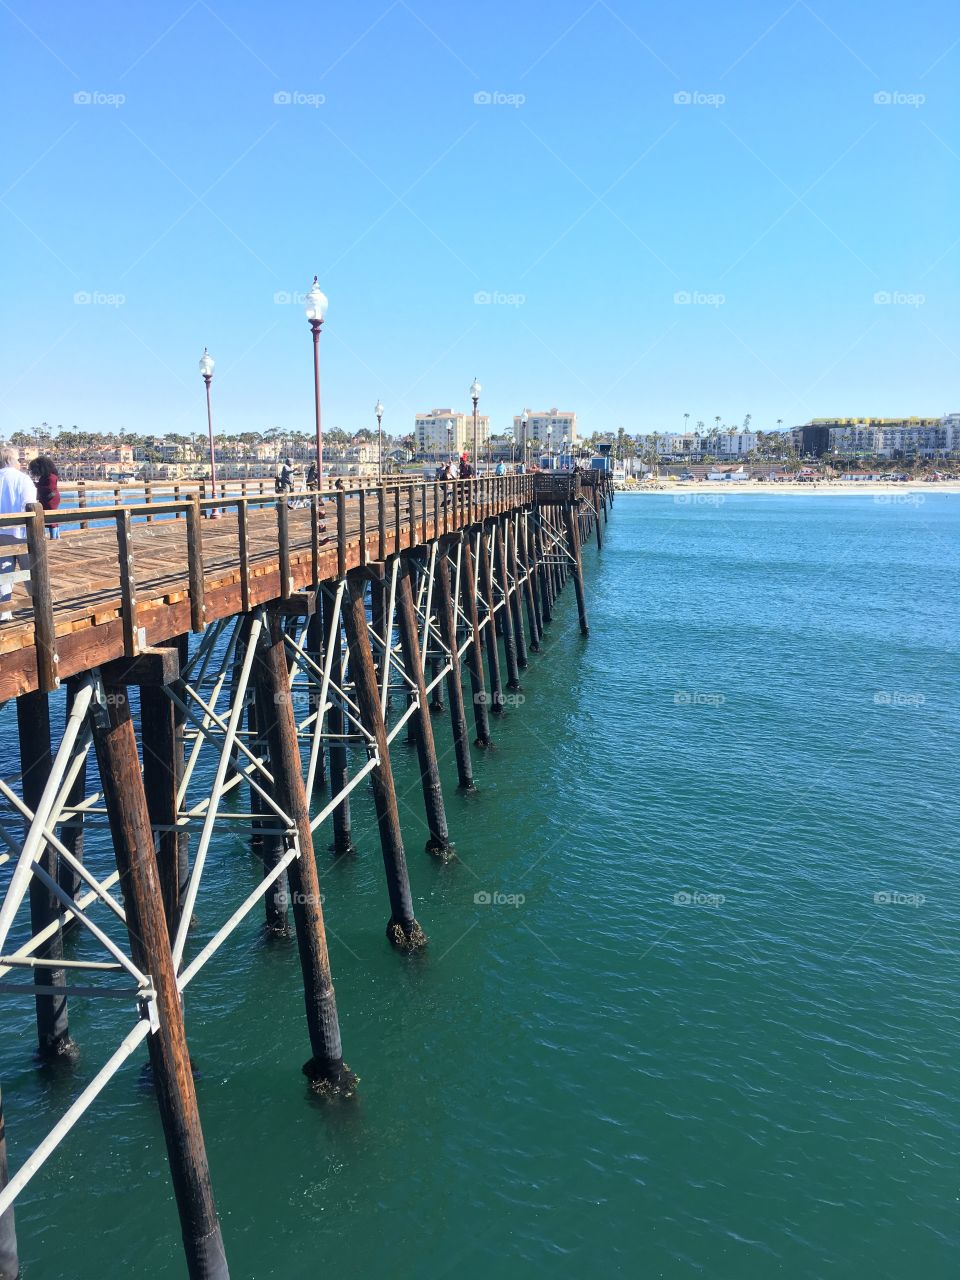 Pier at Oceanside, CA